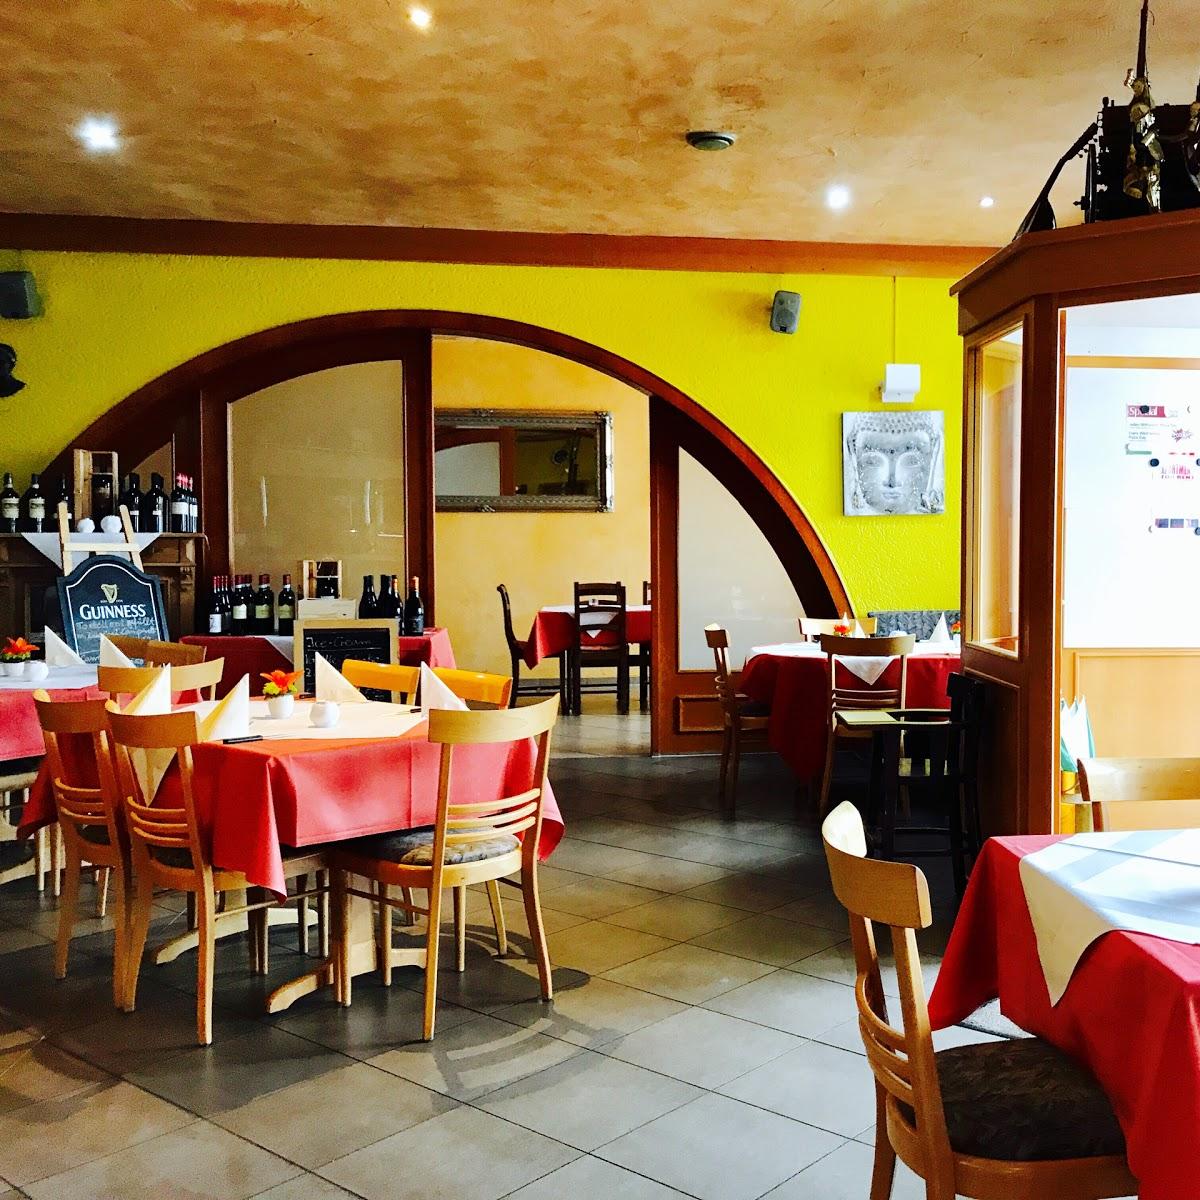 Restaurant "Montana (Italian)" in Reichenbach-Steegen